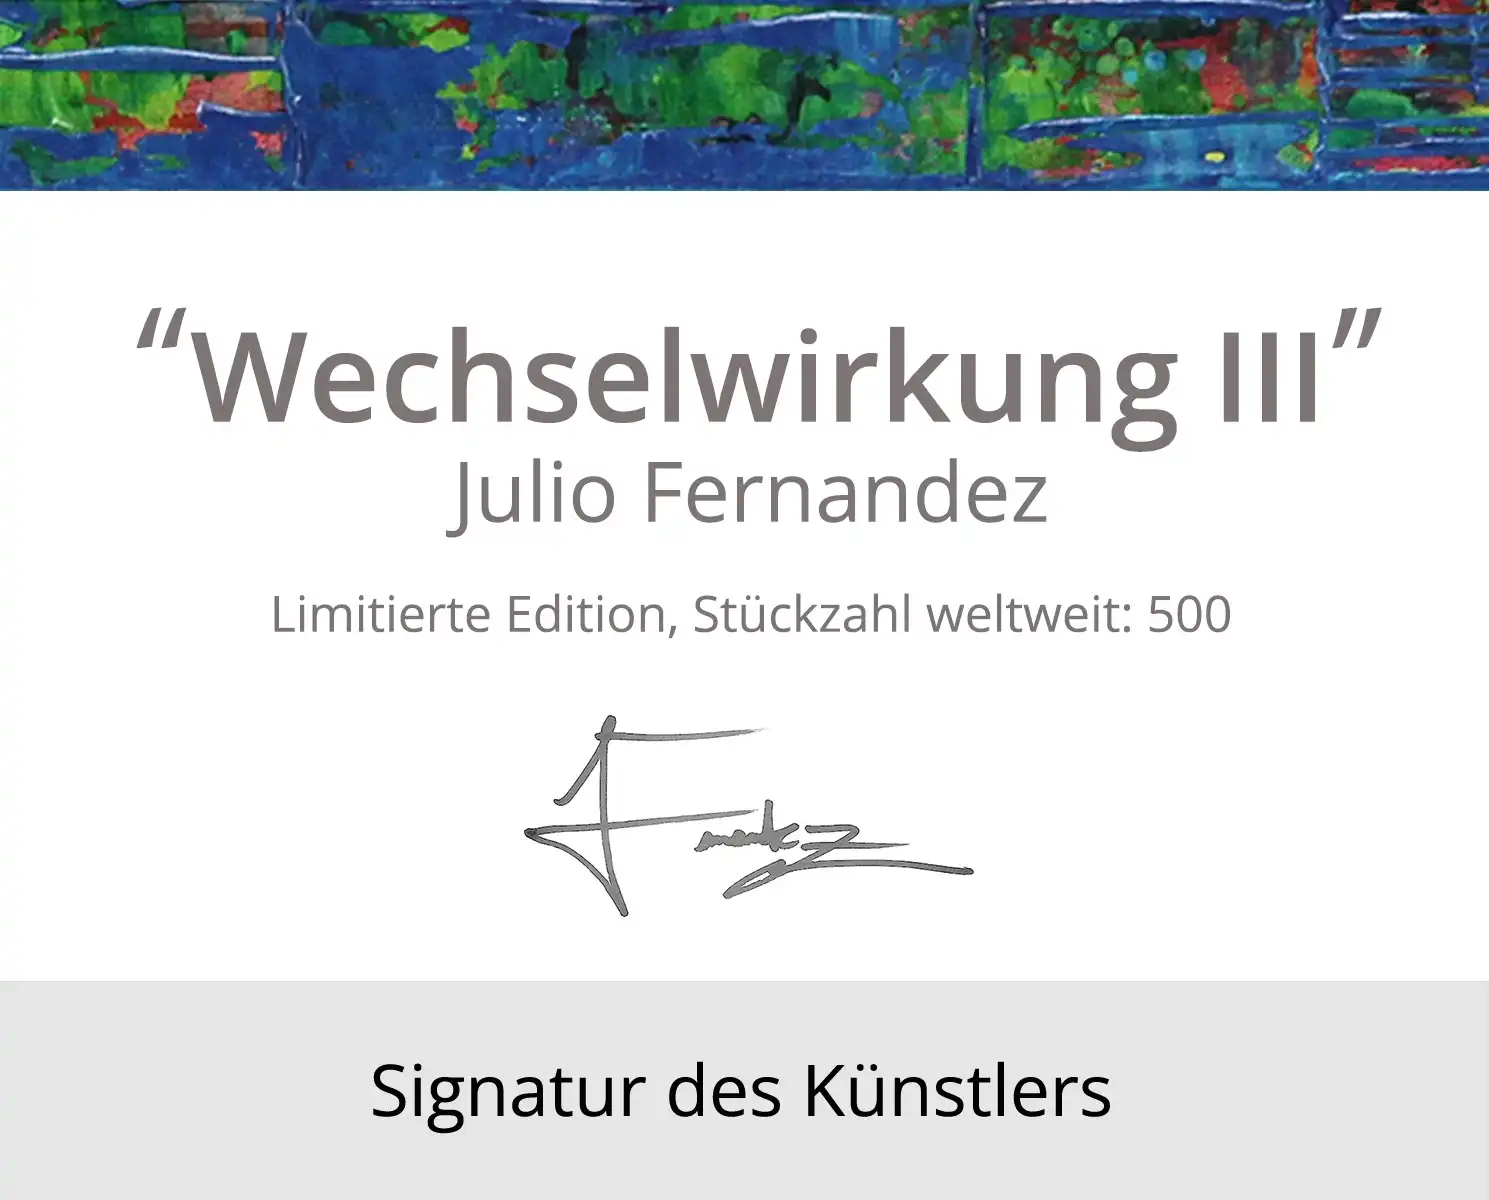 Limitierte Edition auf Papier, J. Fernandez "Wechselwirkung III", Fineartprint, Kollektion E&K